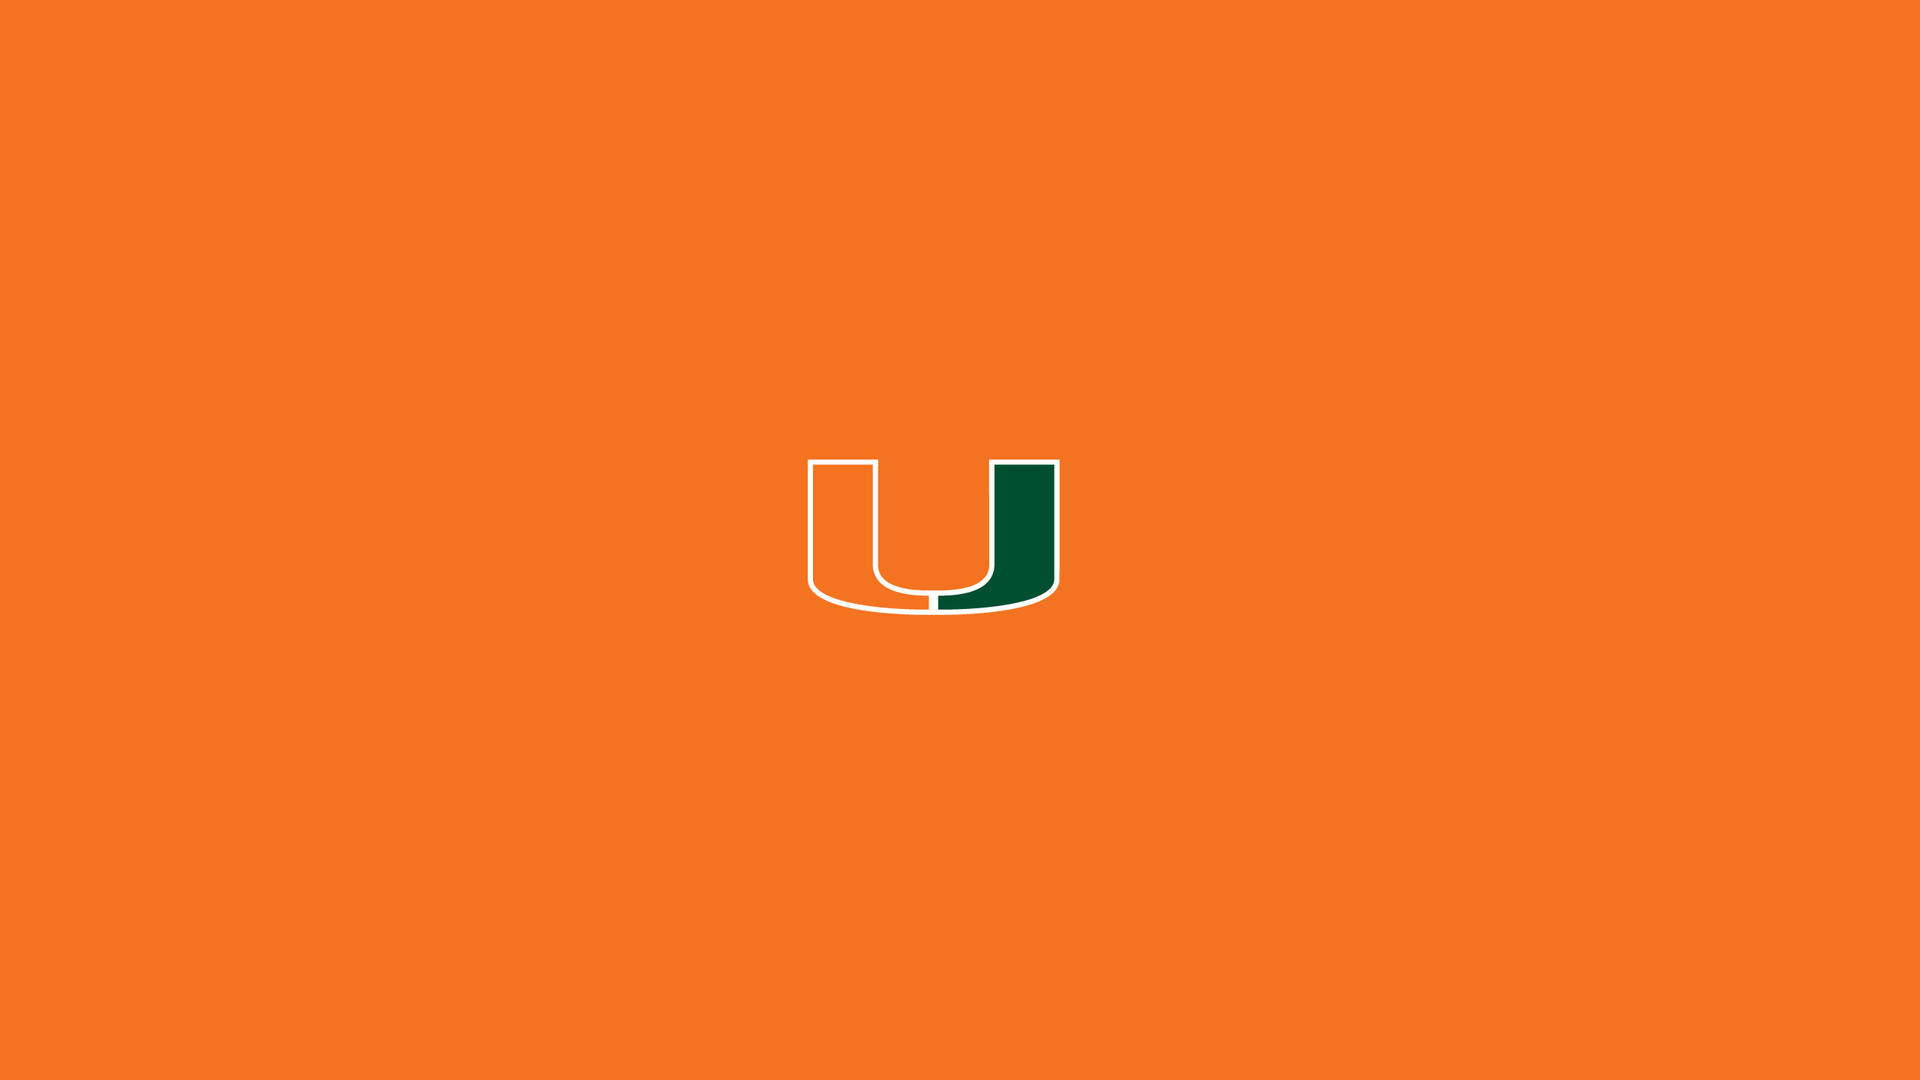 Fondode Pantalla Con El Logotipo De La Universidad De Miami En Color Naranja Fondo de pantalla